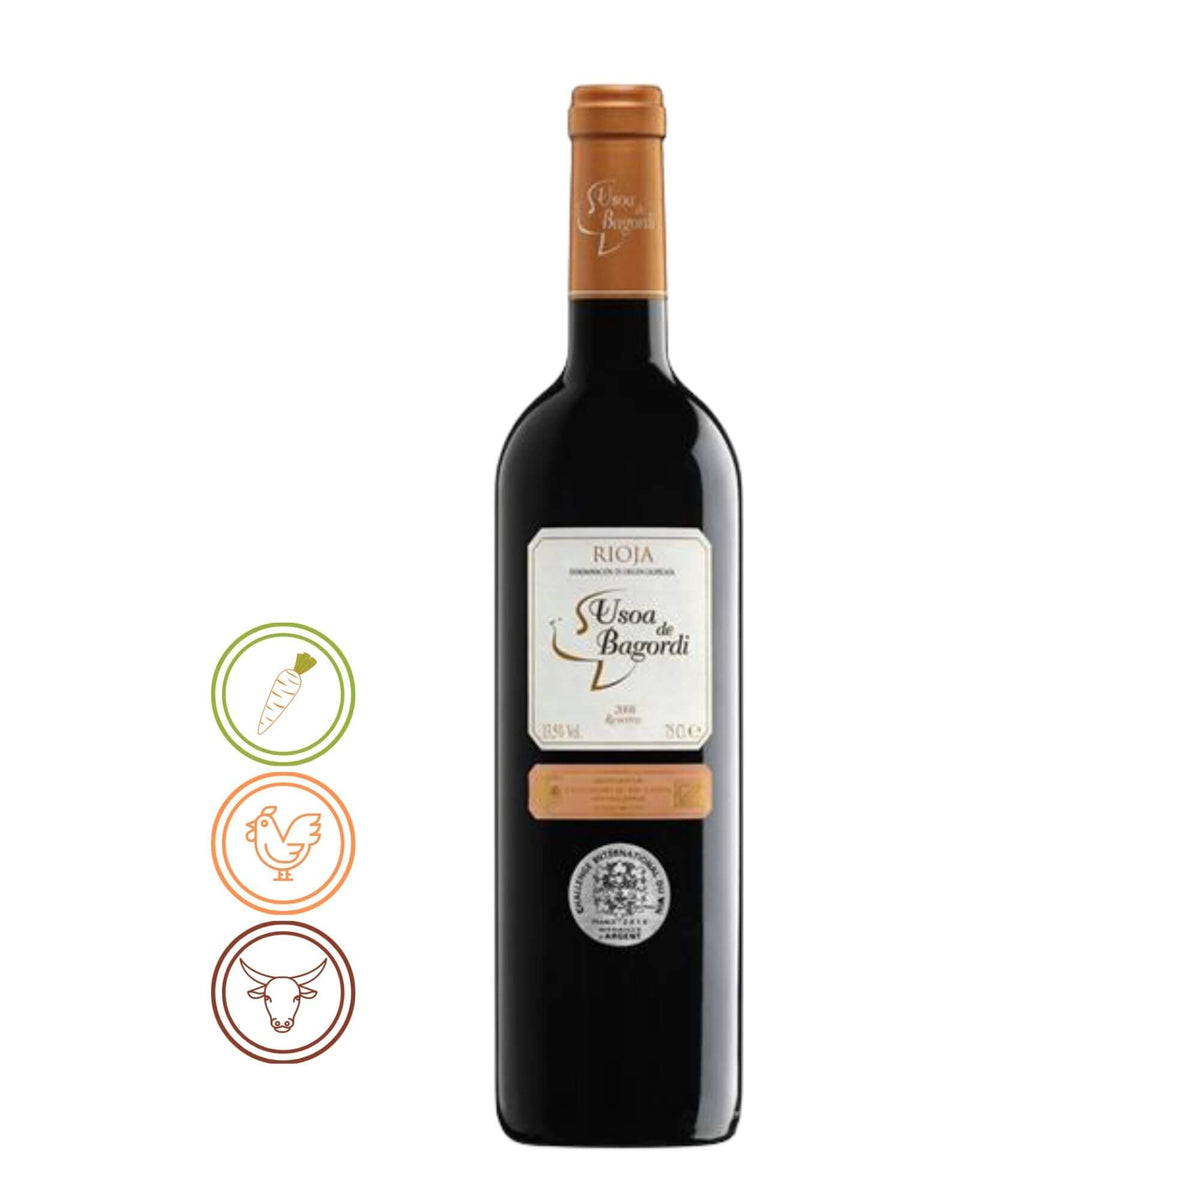 Usoa de Bagordi Reserva - Rioja, 2008 - Notas de Cata | Tu tienda online de Vino en Perú 